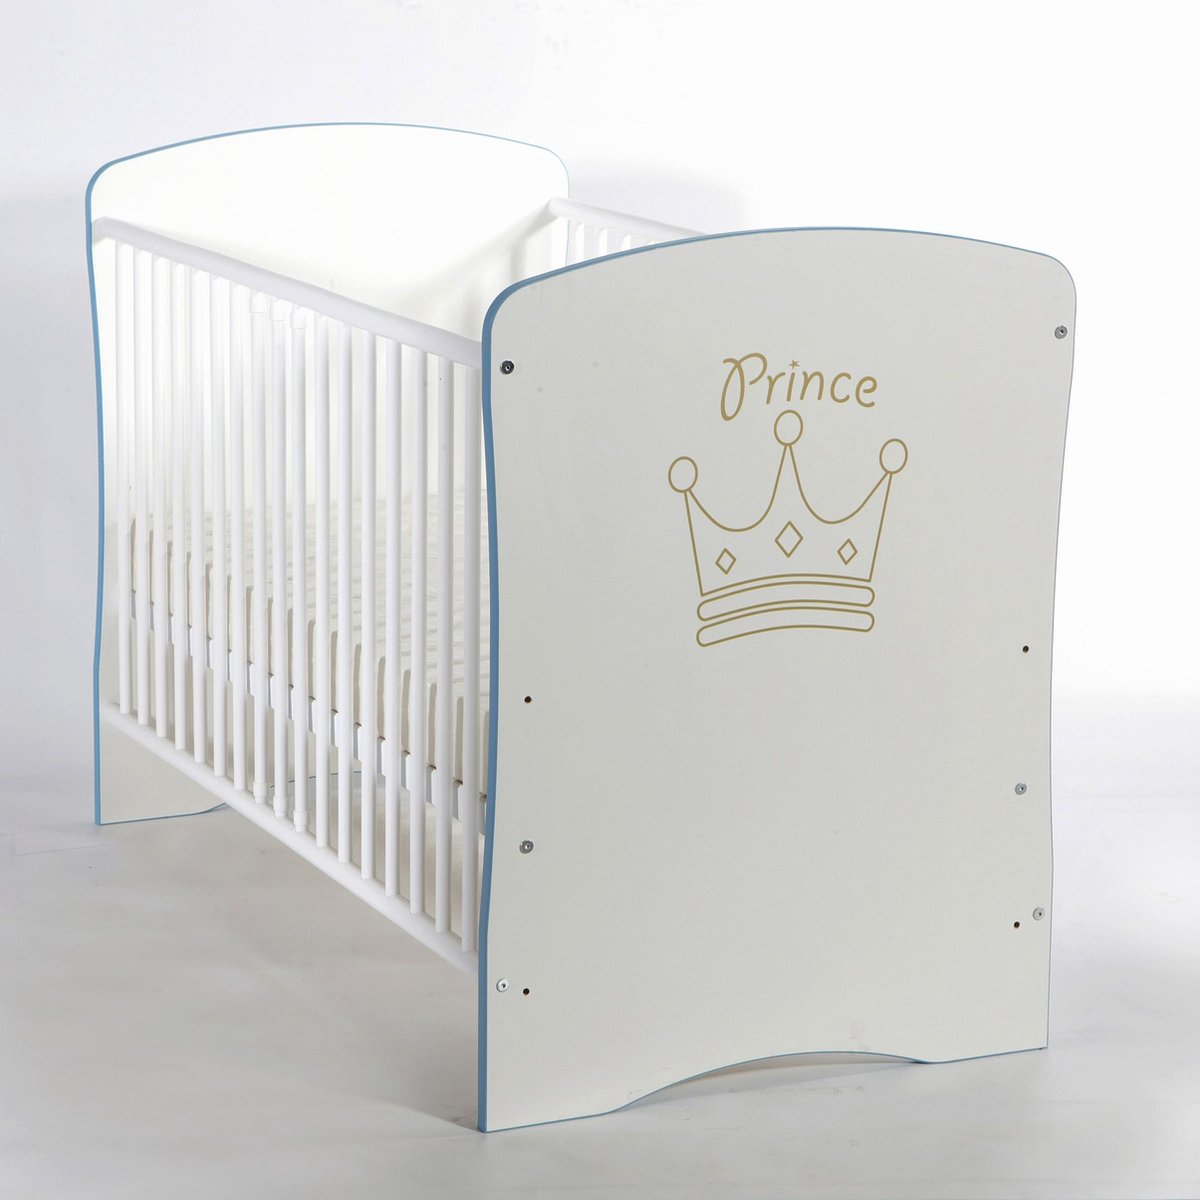 Bed - Ledikant "Prince"/ 60x120cm | bol.com